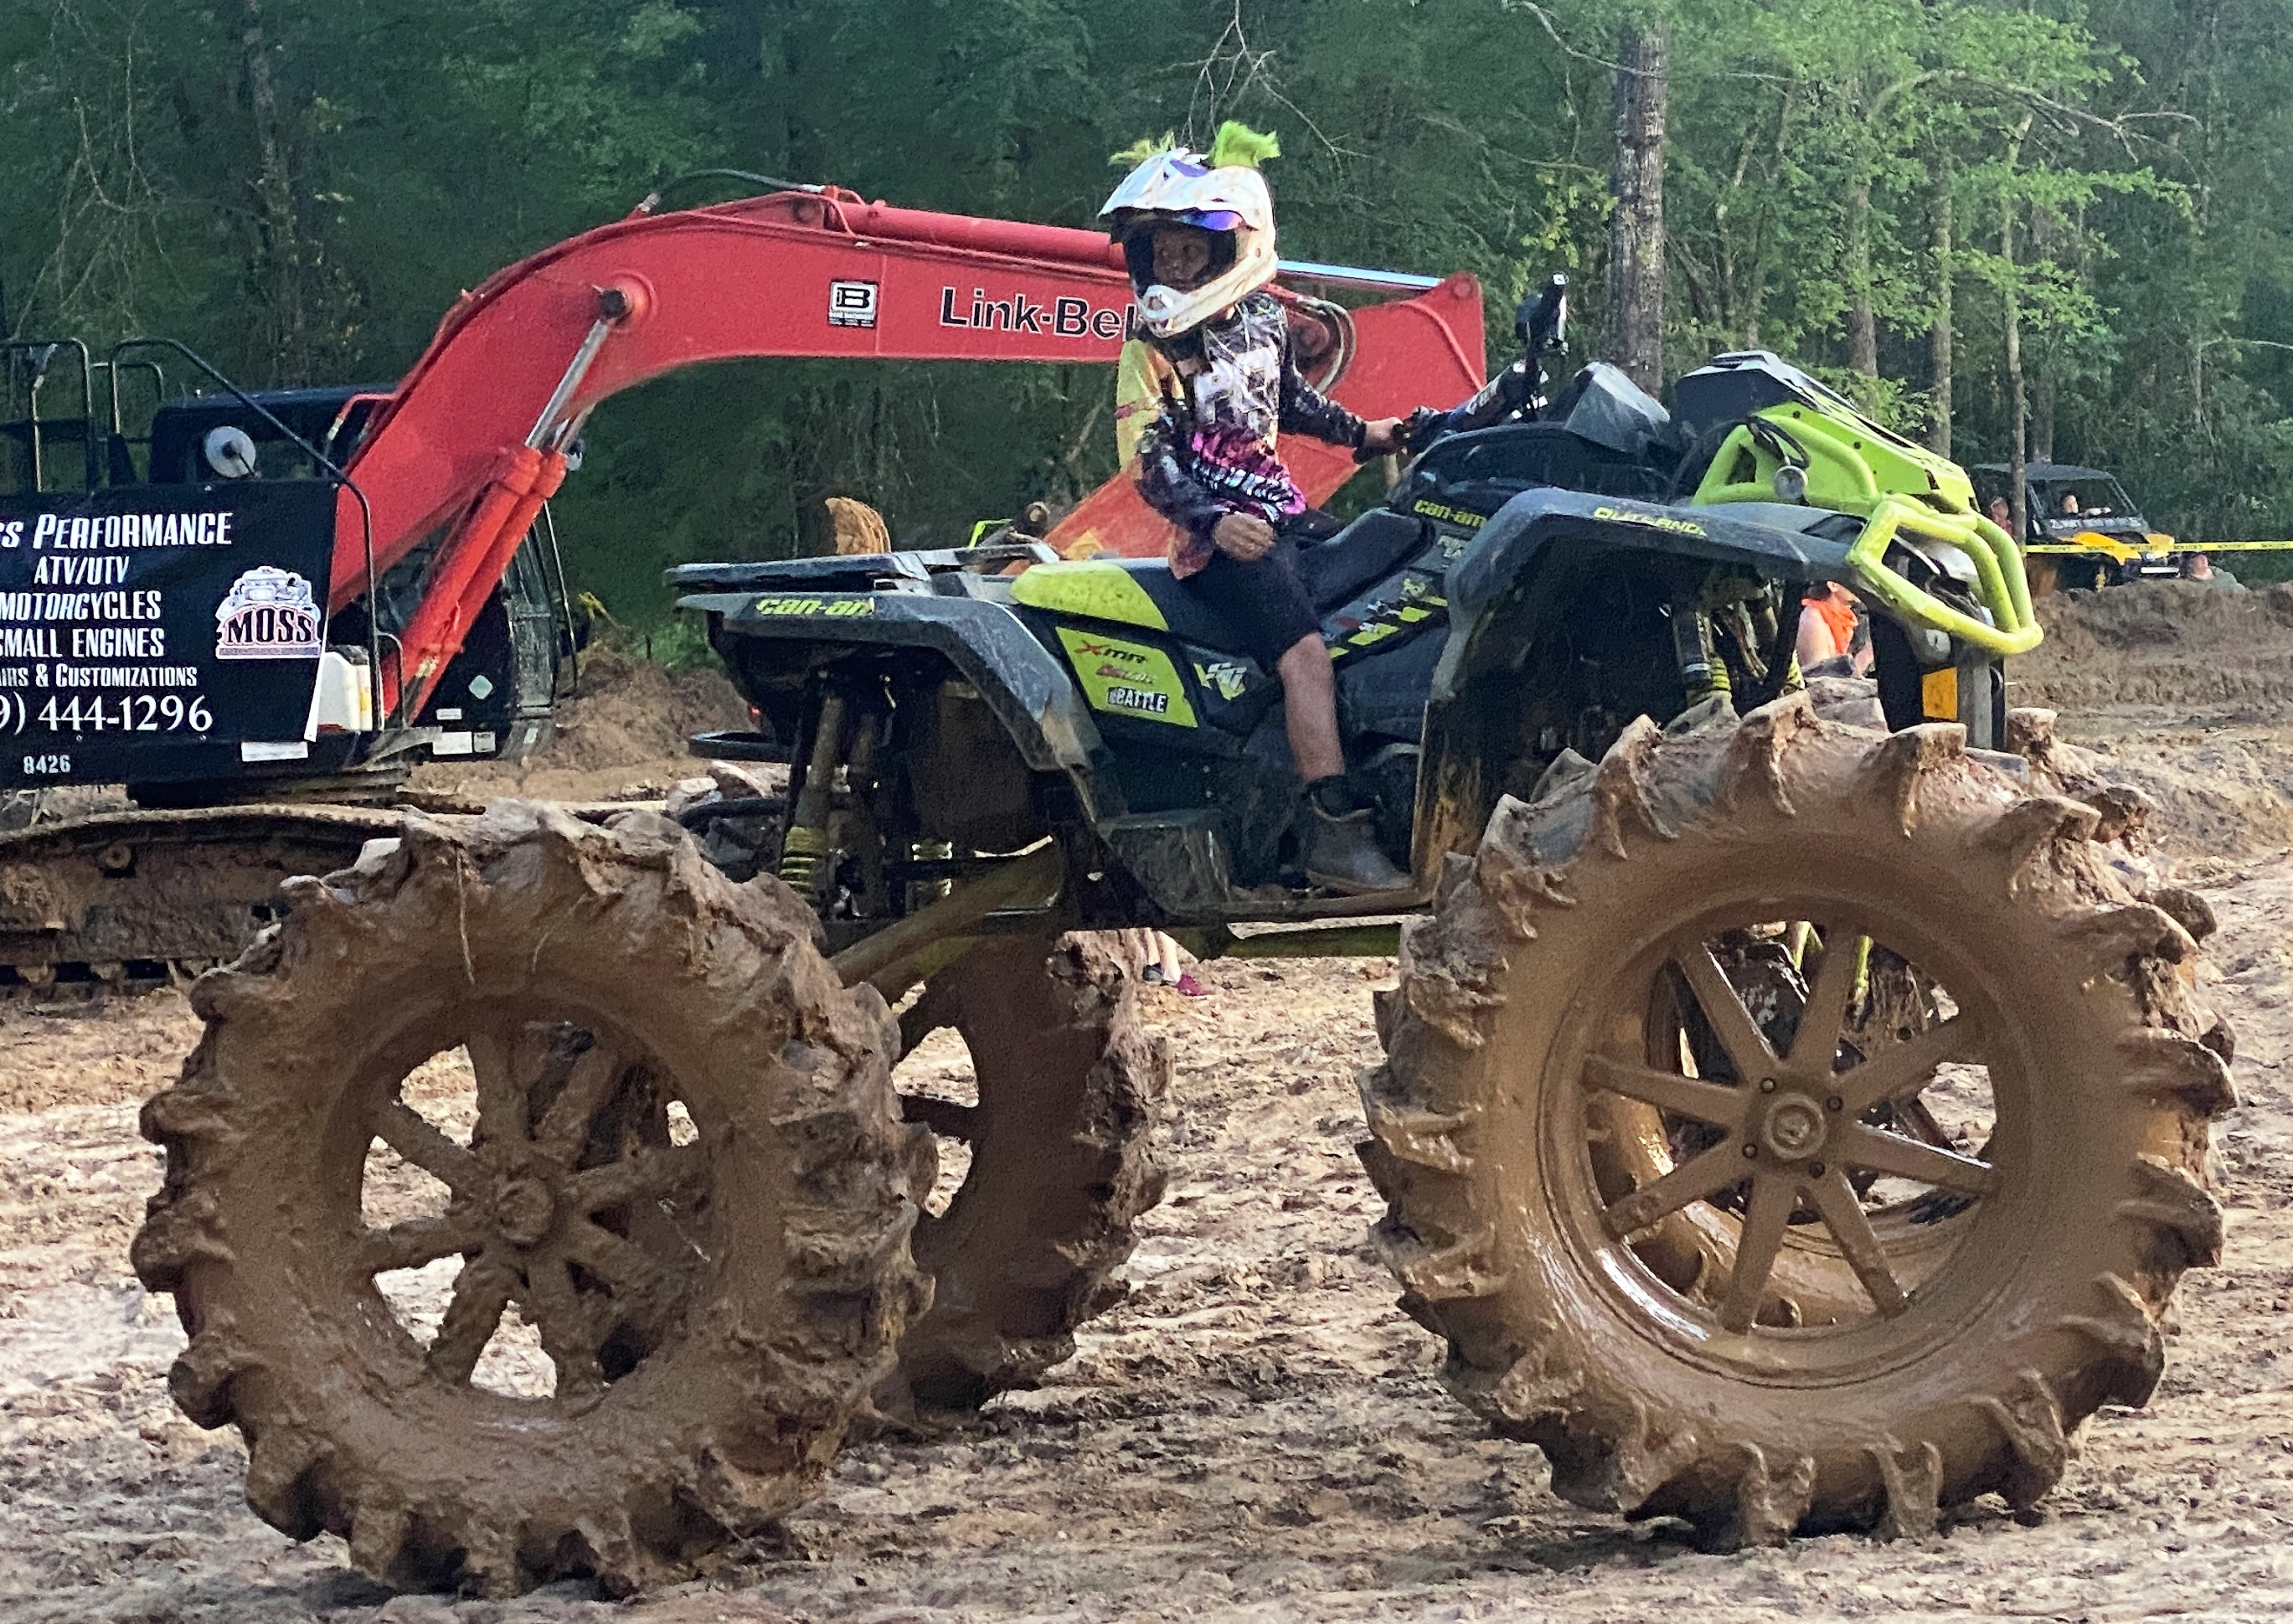 ATV ready to mud ride 